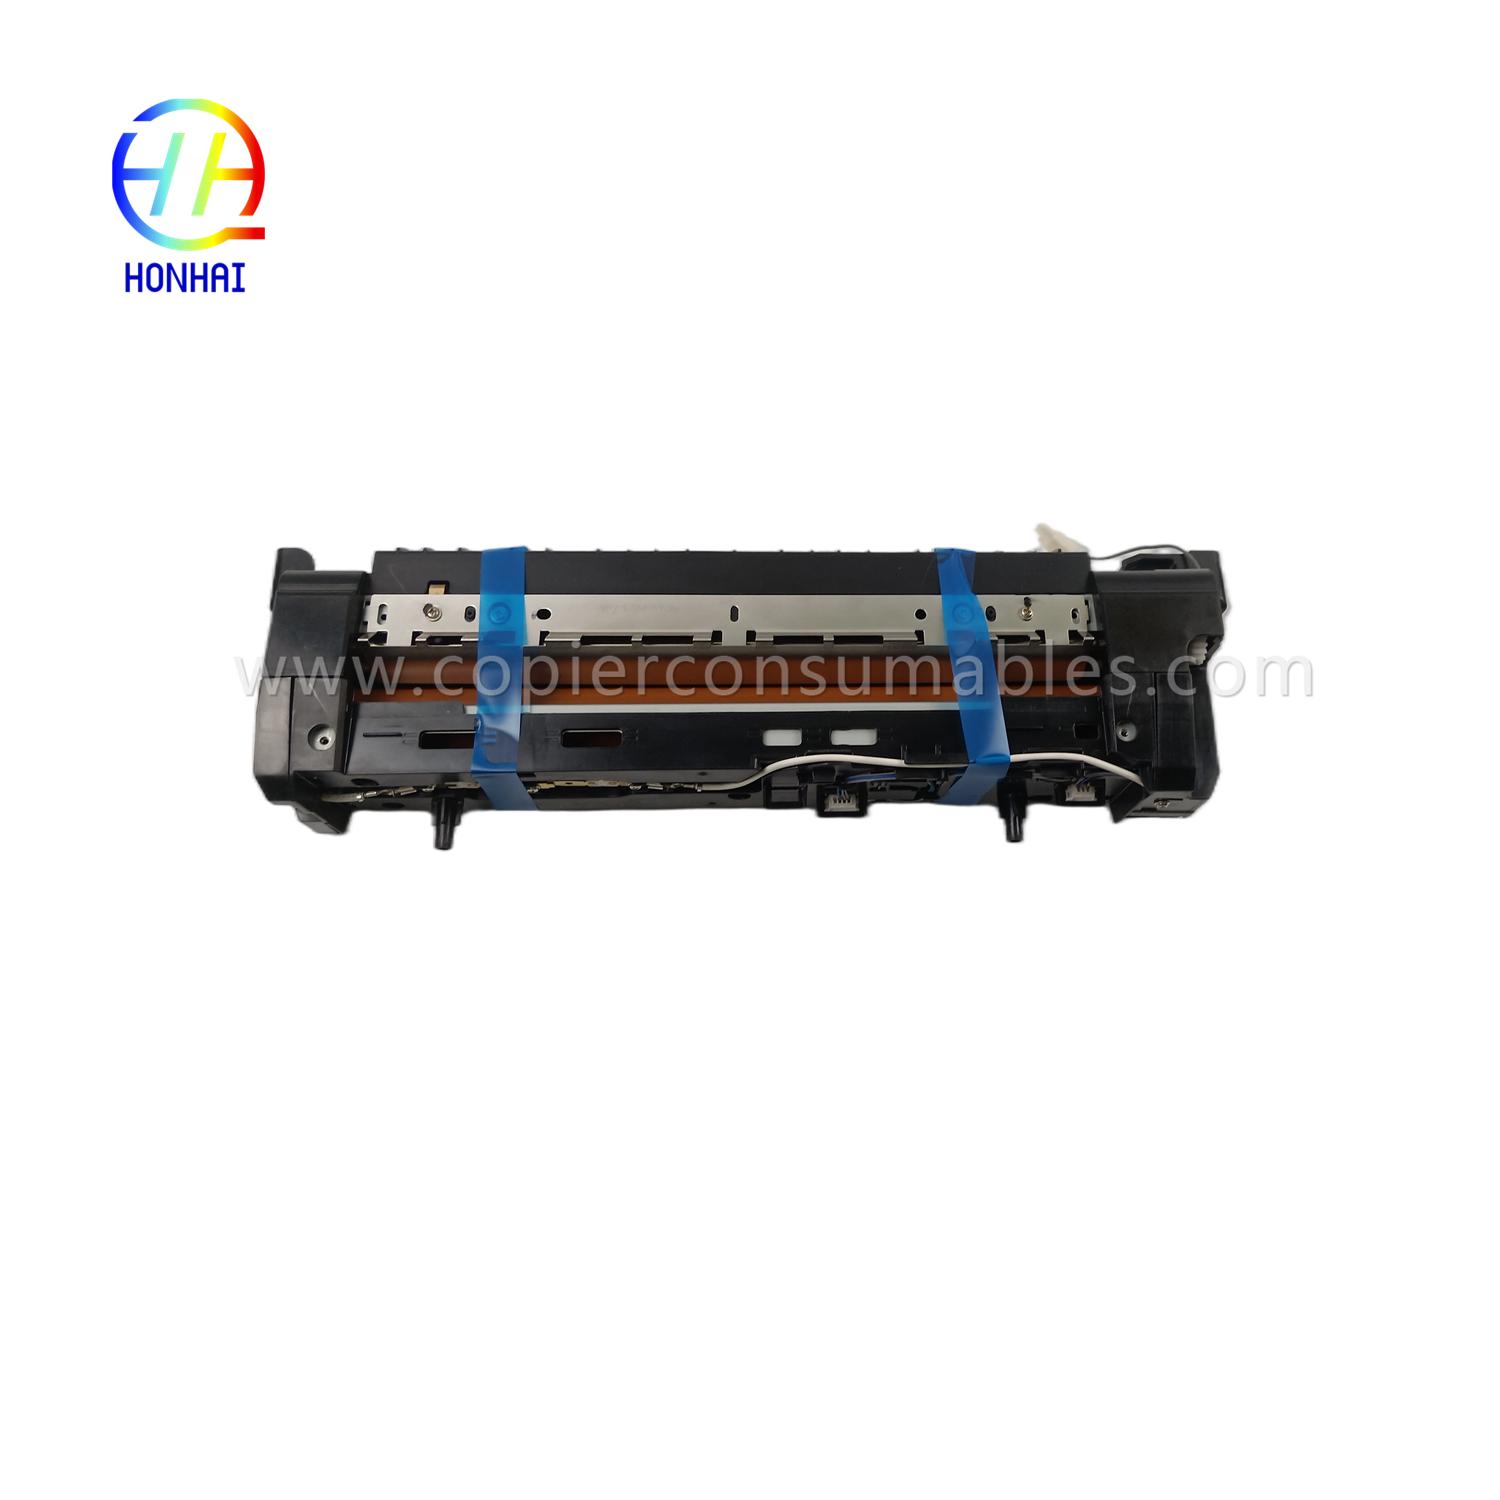 https://www.copierhonhaitech.com/fuser-unit-for-samsung-jc91-01163a-4250-4350-k4250-k4350-k4250rx-k4350lx-k4250lx-fuser-assembly-product/